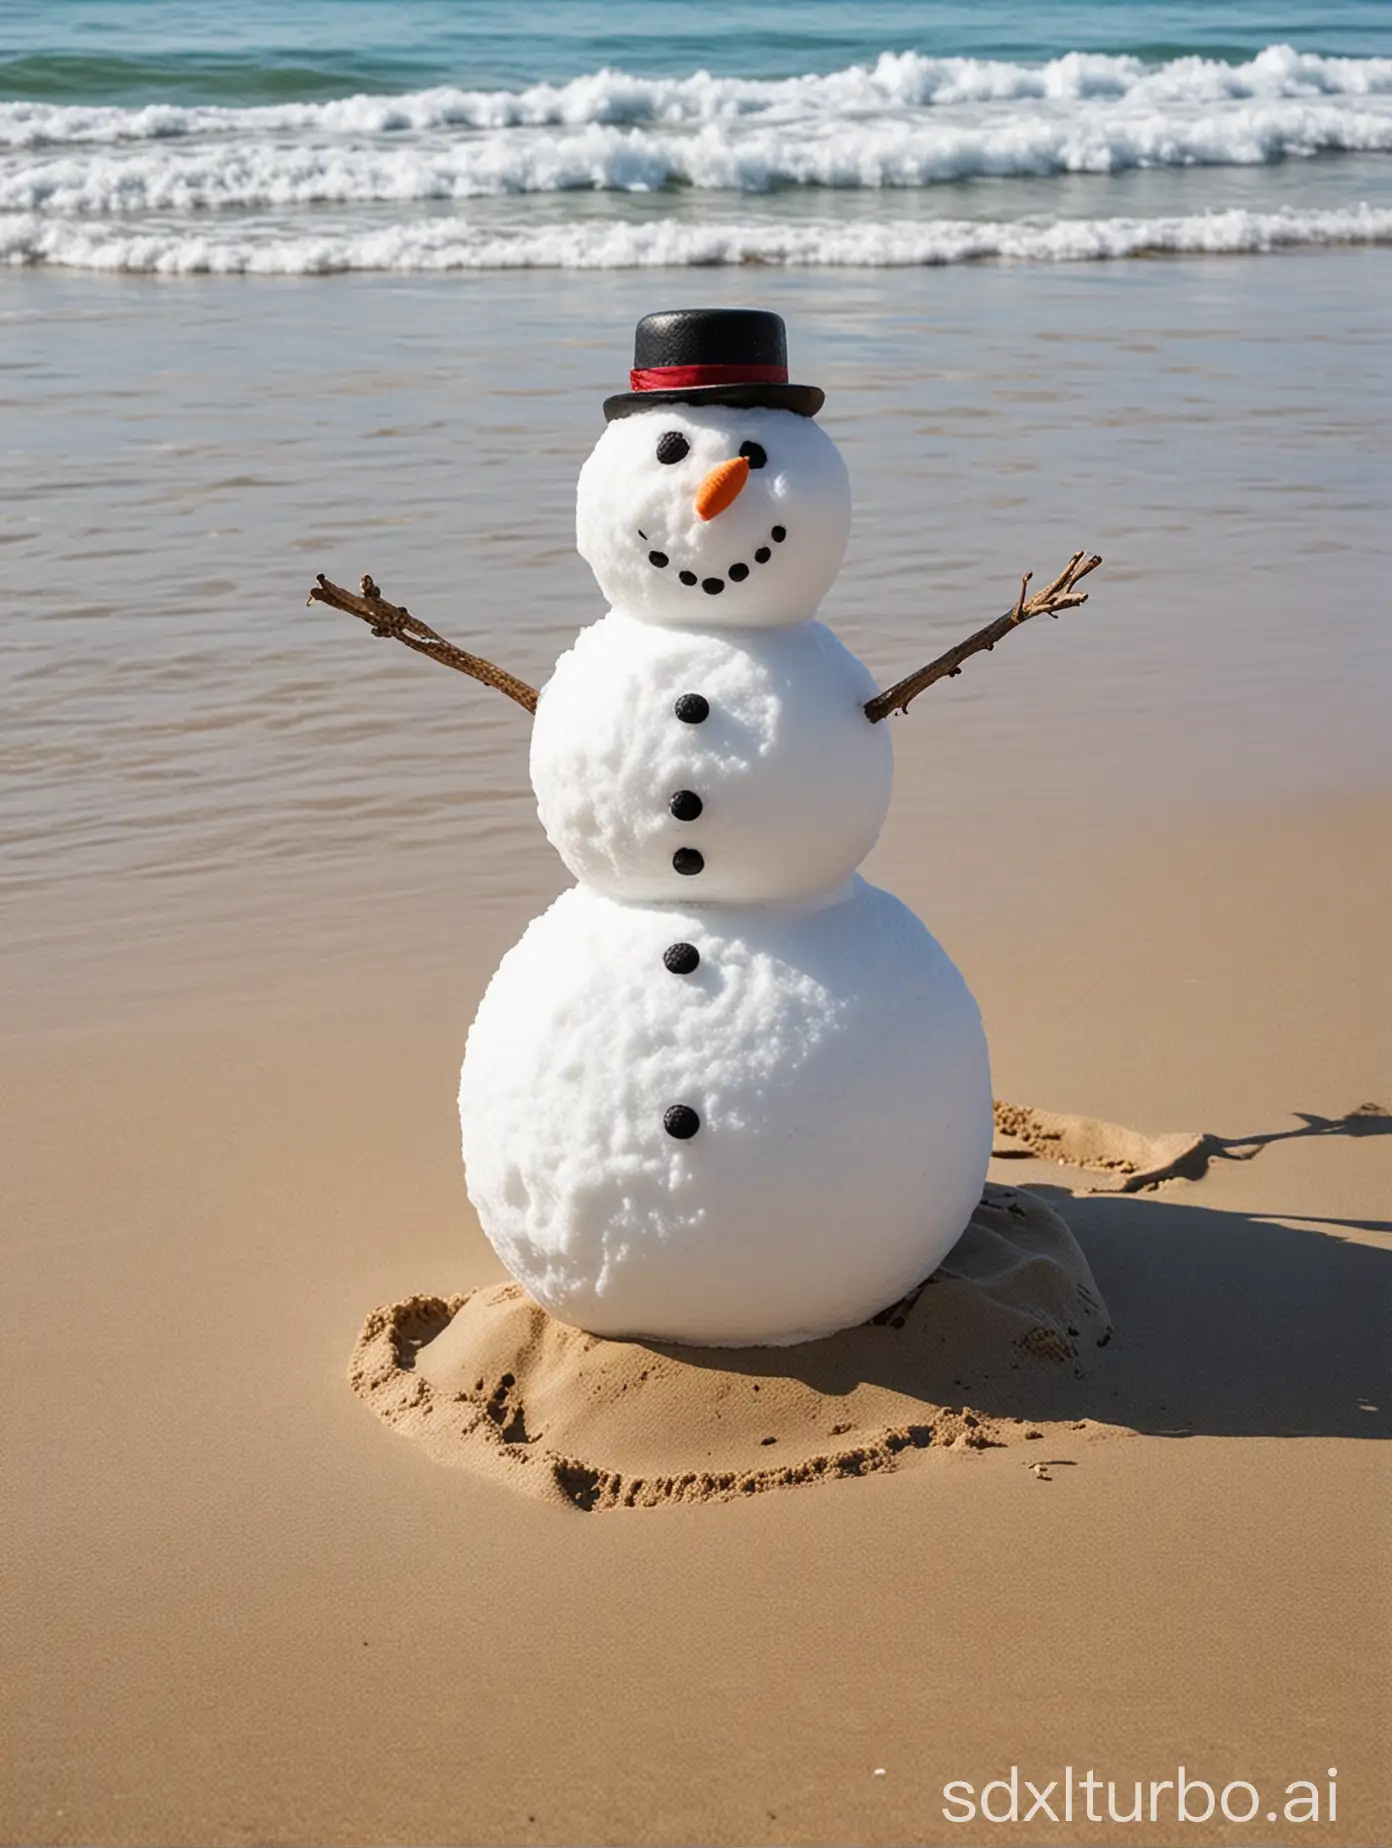 snowman on a beach